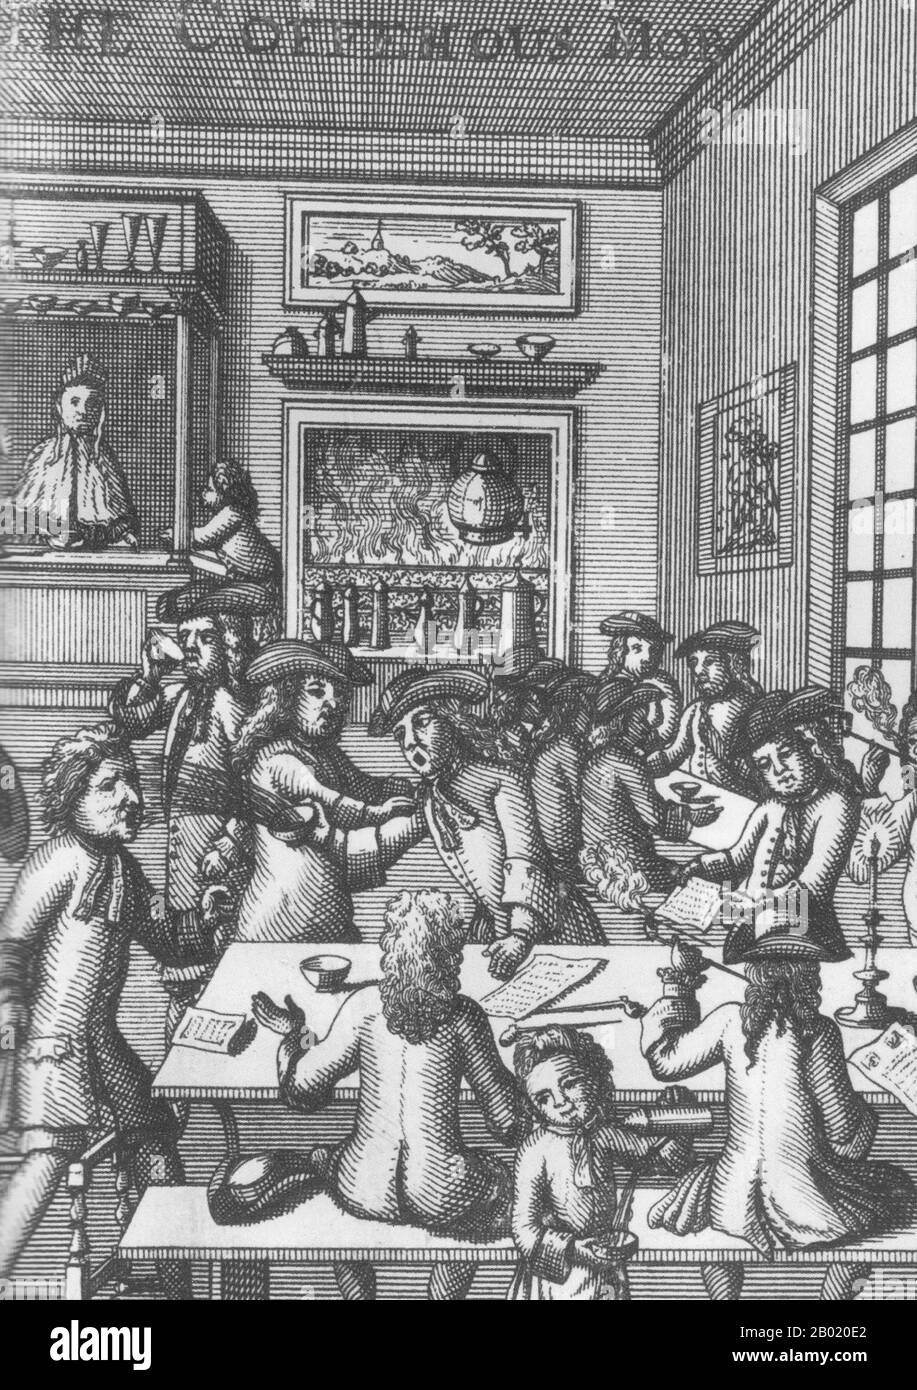 Historiker definieren englische Kaffeehäuser als öffentliche Sozialhäuser im 17. Und 18. Jahrhundert, in denen sich die Gönner für Gespräche und soziale Interaktion zusammenfinden und gleichzeitig an den neu aufkommenden Kaffee-Konsum-Gewohnheiten der Zeit teilnehmen würden. Reisende führten Mitte des 17. Jahrhunderts Kaffee als Getränk nach England ein. Zum Preis eines Pennys kauften die Kunden eine Tasse Kaffee und Eintritt in ein Kaffeehaus, in dem sich Männer im Gespräch engagierten. Zu den Themen, die in den Kaffeehäusern diskutiert wurden, gehörten Politik und politische Skandale, tägliches Tratsch, Mode, aktuelle Ereignisse und Debatten su Stockfoto